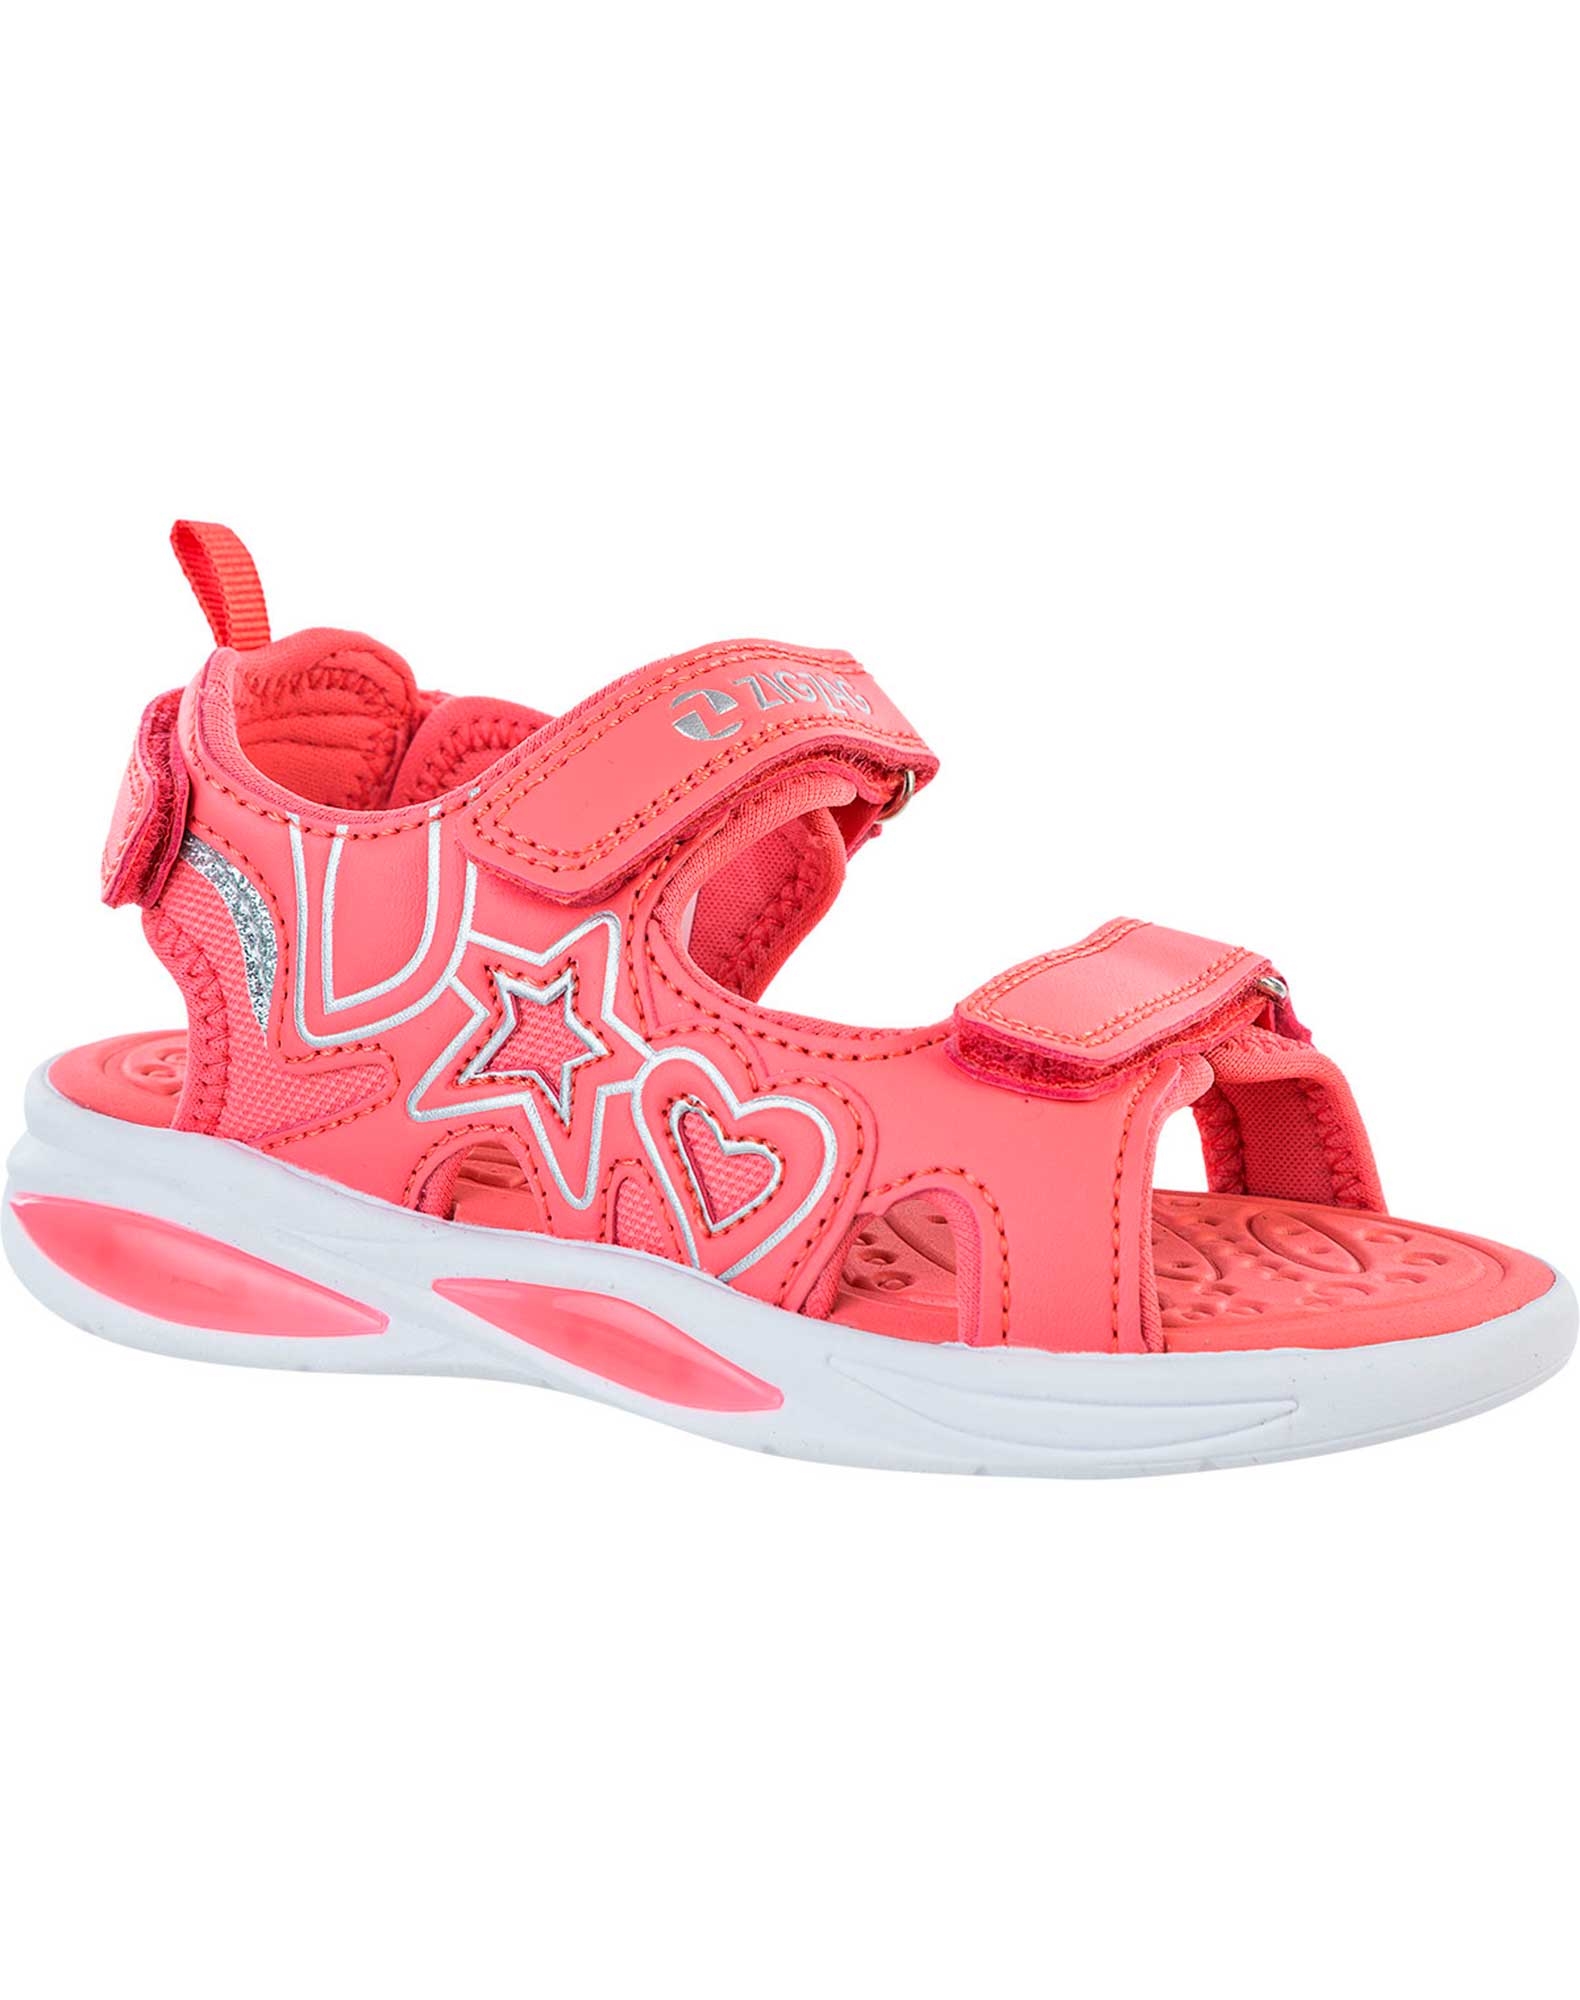 Mere Modtagelig for radius Køb Zig Zag Miki sandaler til børn i pink